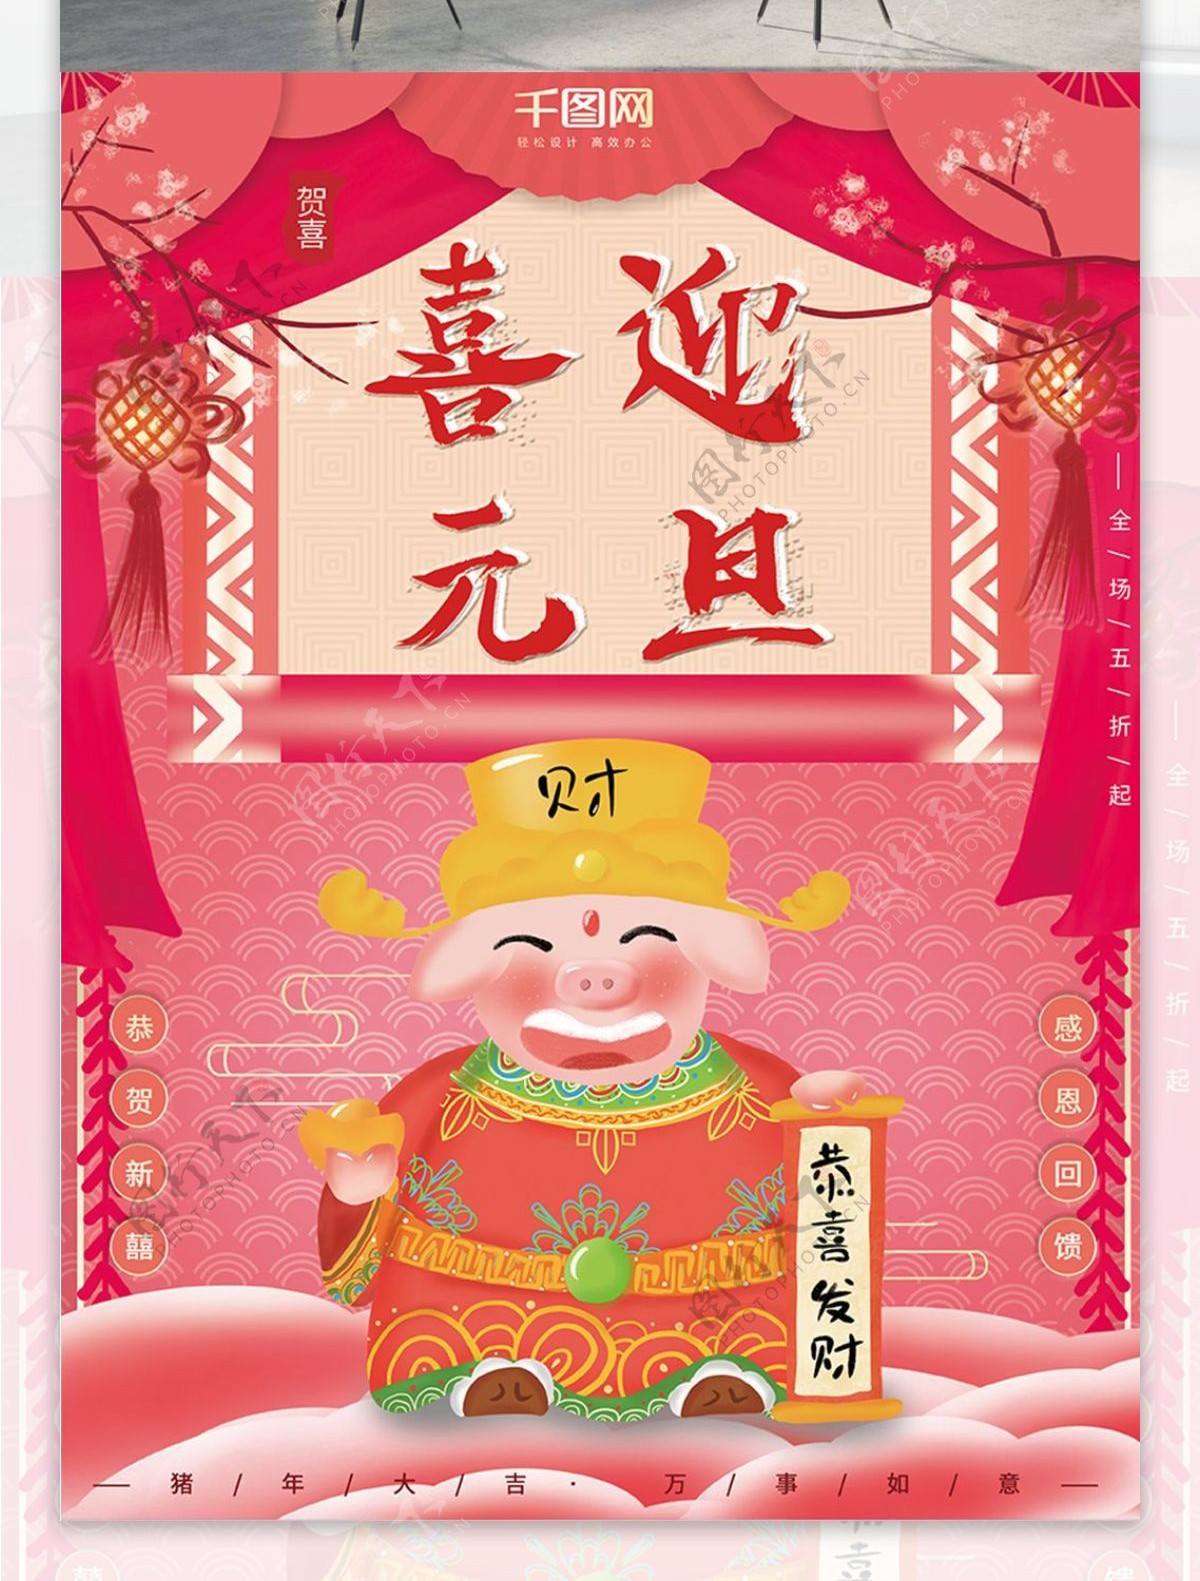 原创插画中国风财神猪年新年喜庆元旦海报